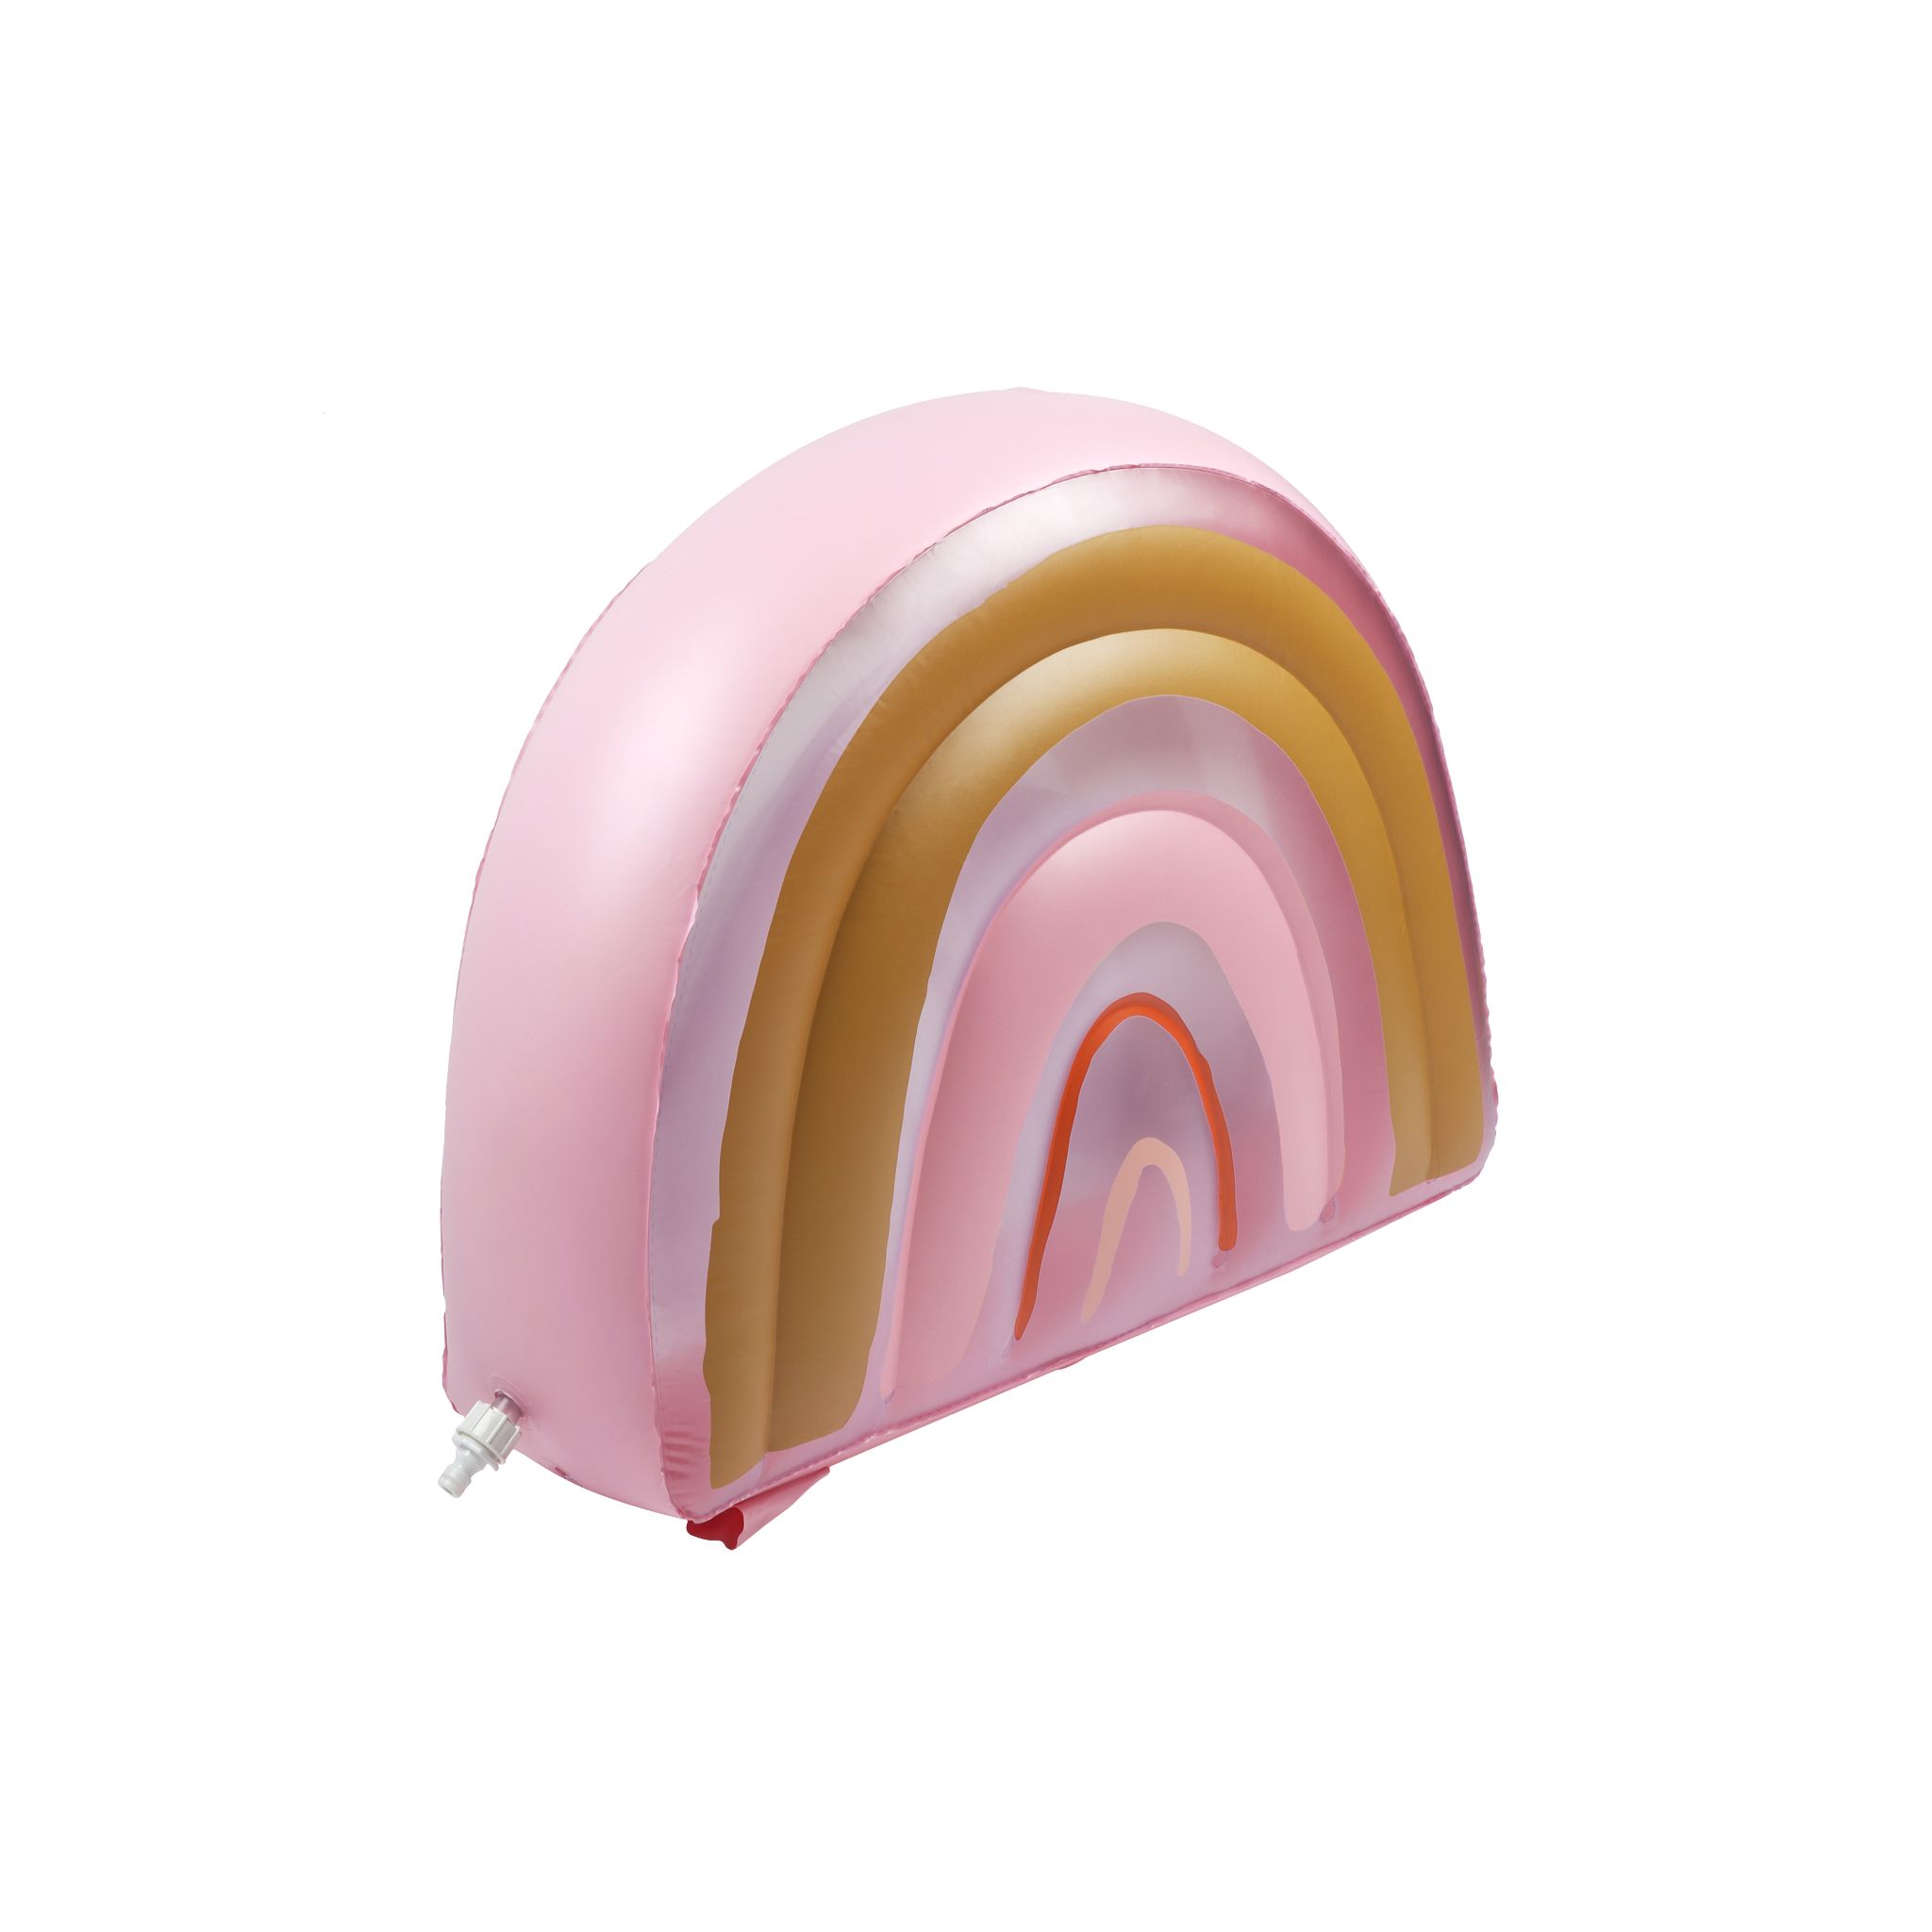 Inflatable Sprinkler Rainbow – Peachy Pink